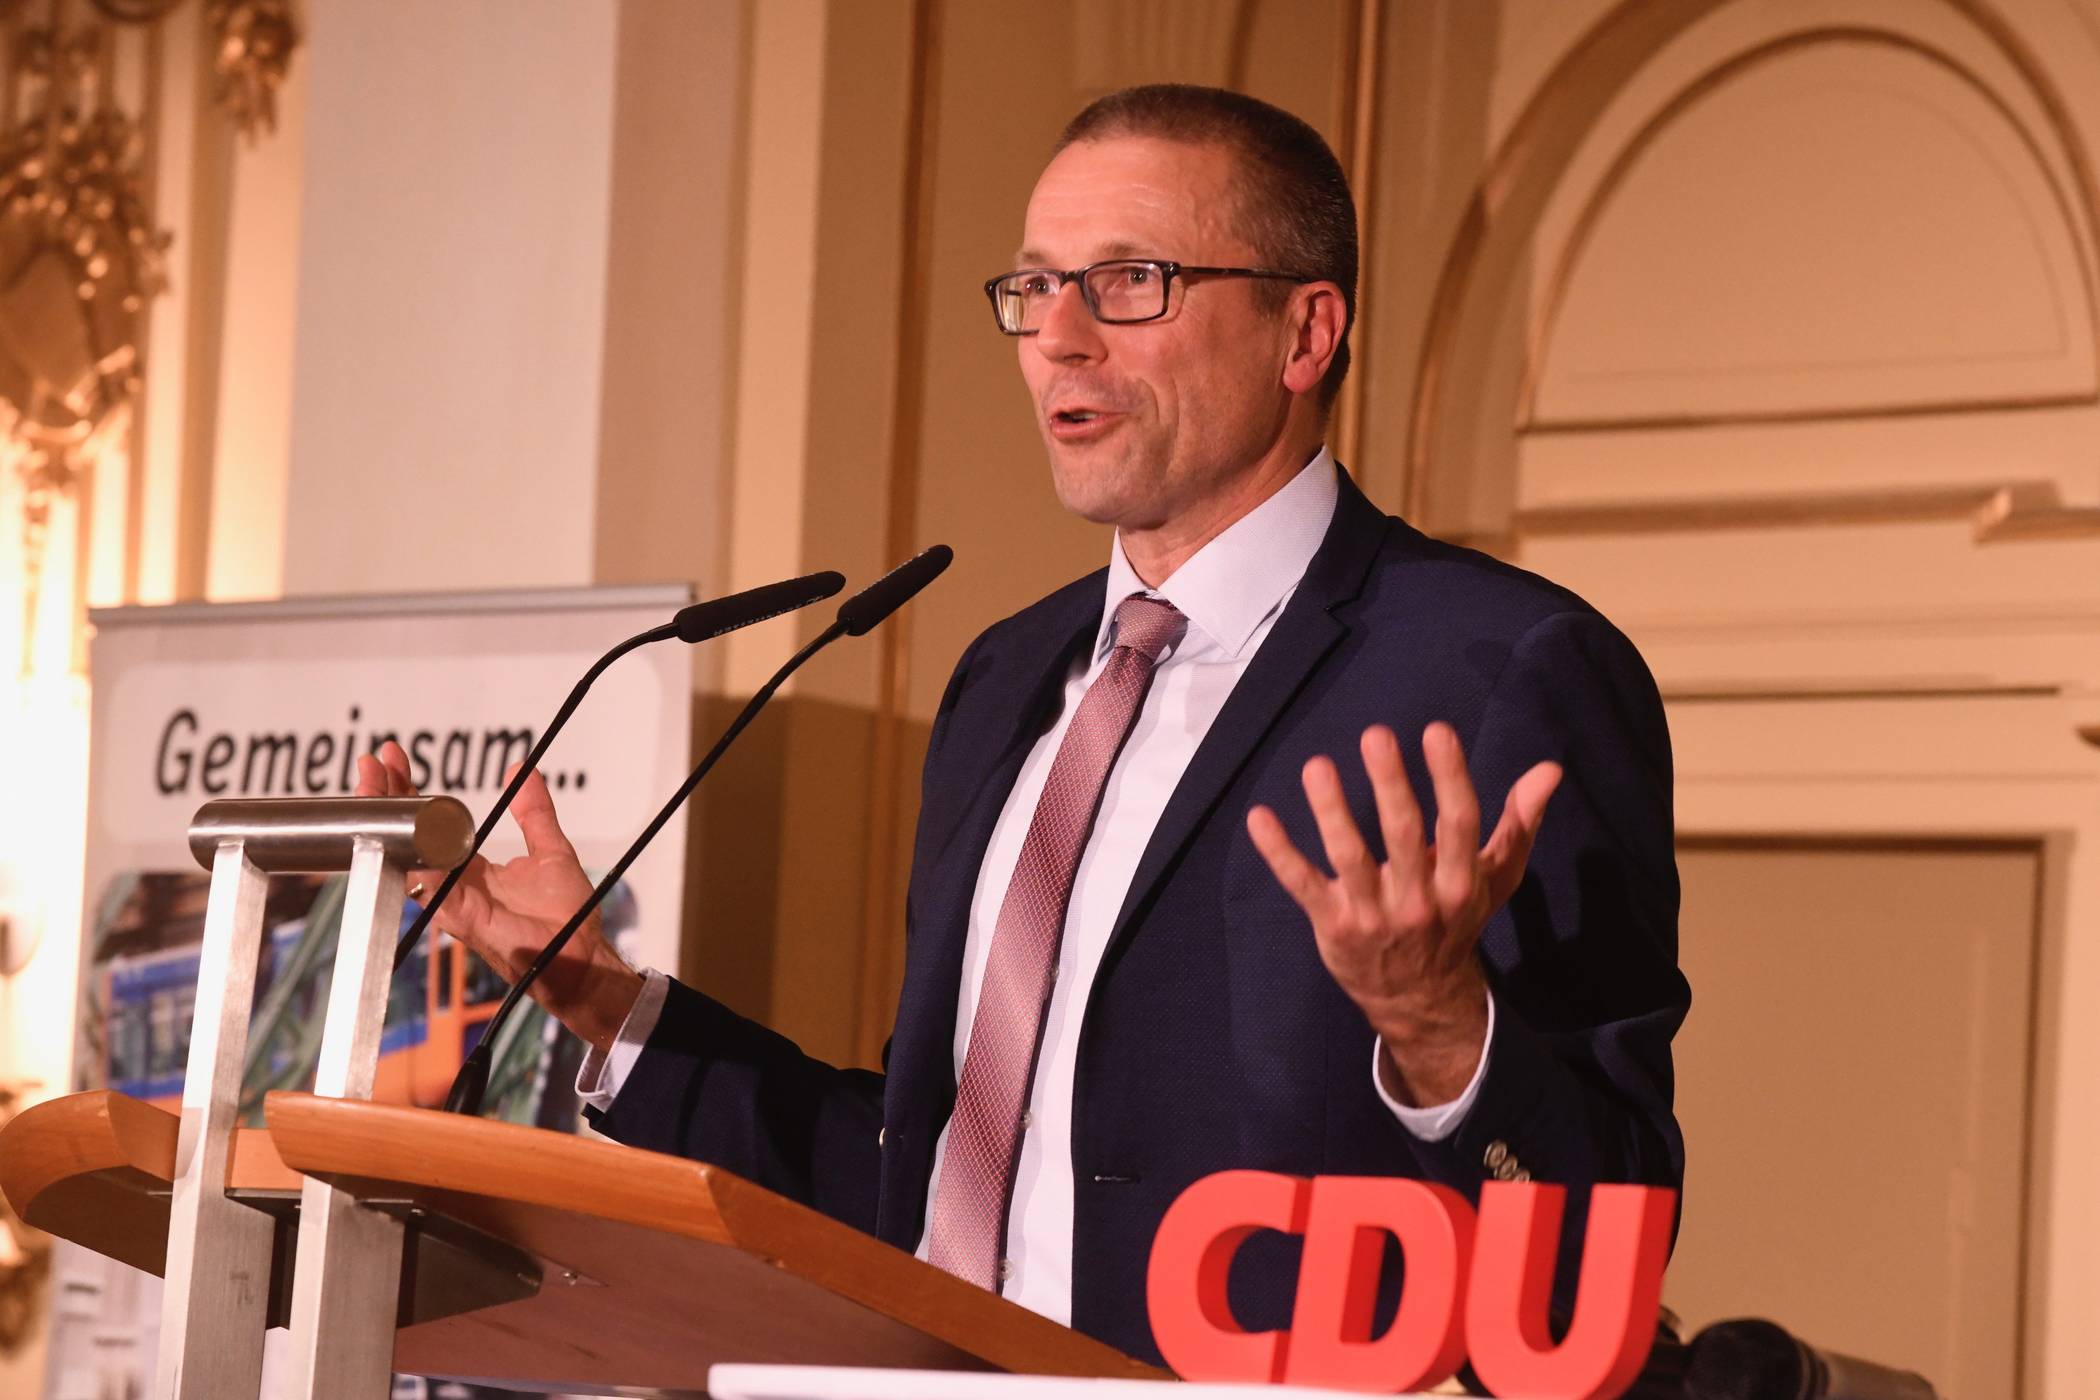 Uwe Schneidewind auf dem Rednerpult zwischen dem CDU-Slogan „Gemeinsam“ und dem Schriftzug der Partei.